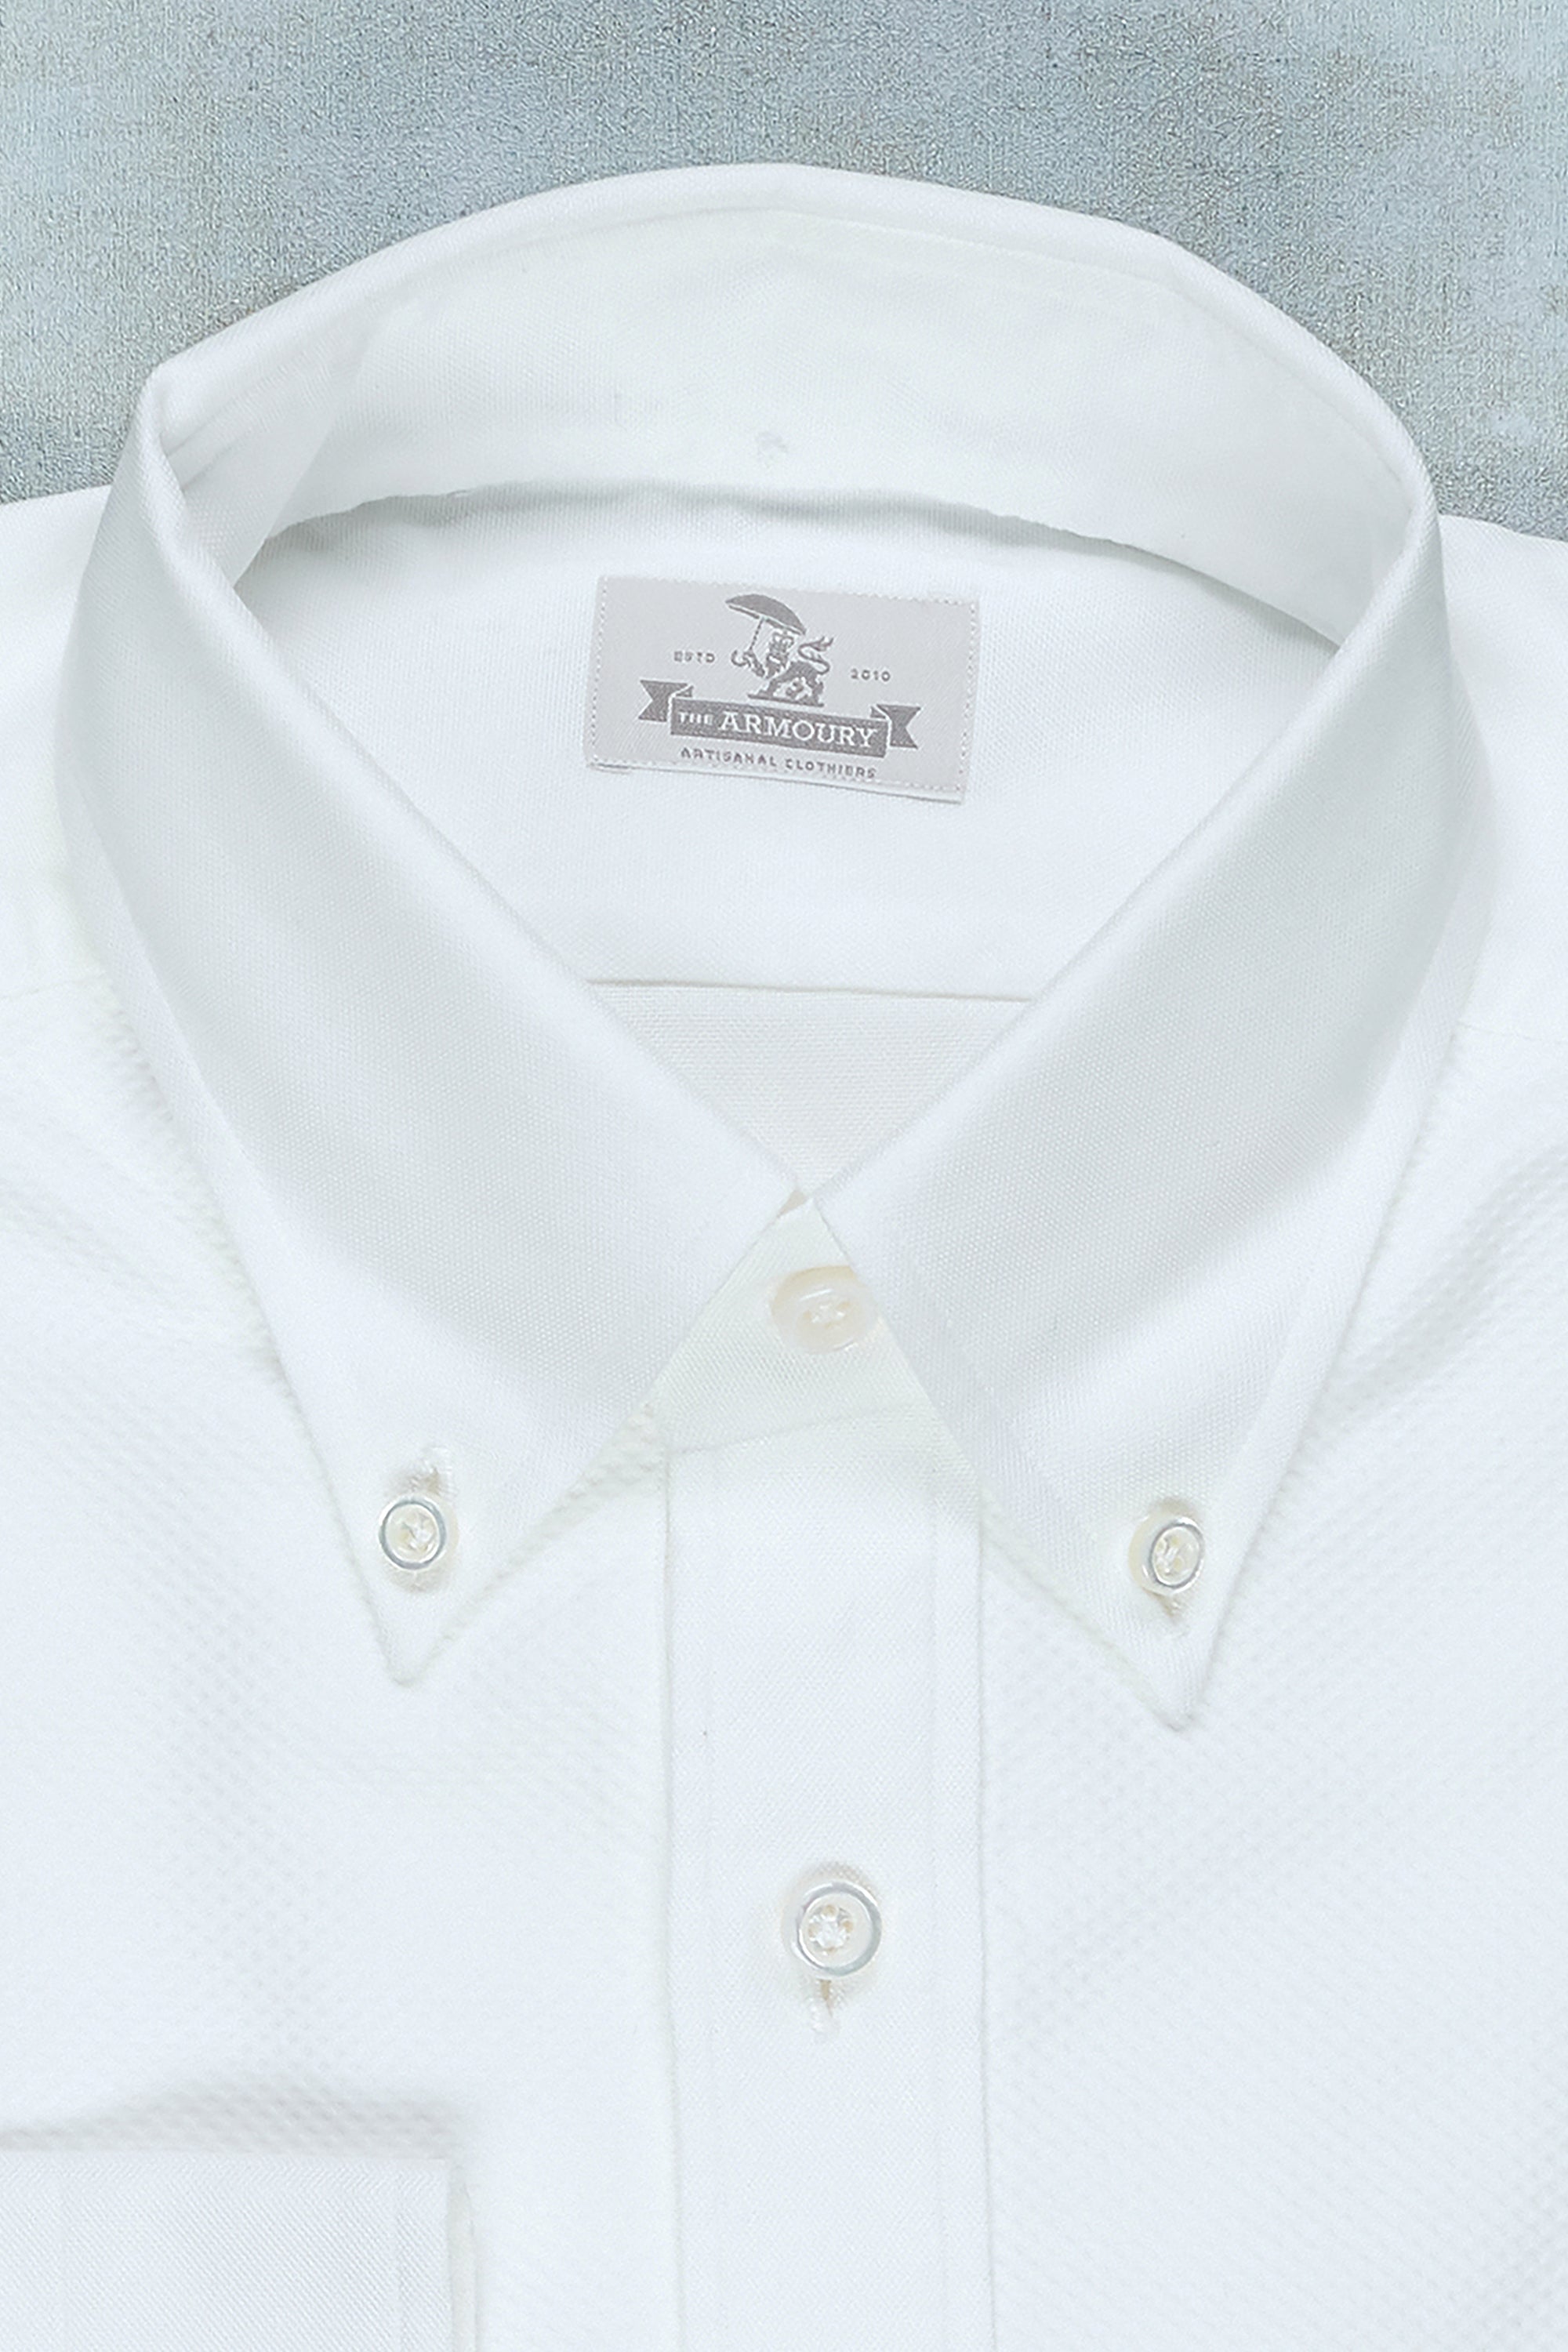 The Armoury White Cotton Tuxedo Shirt MTO *sample*